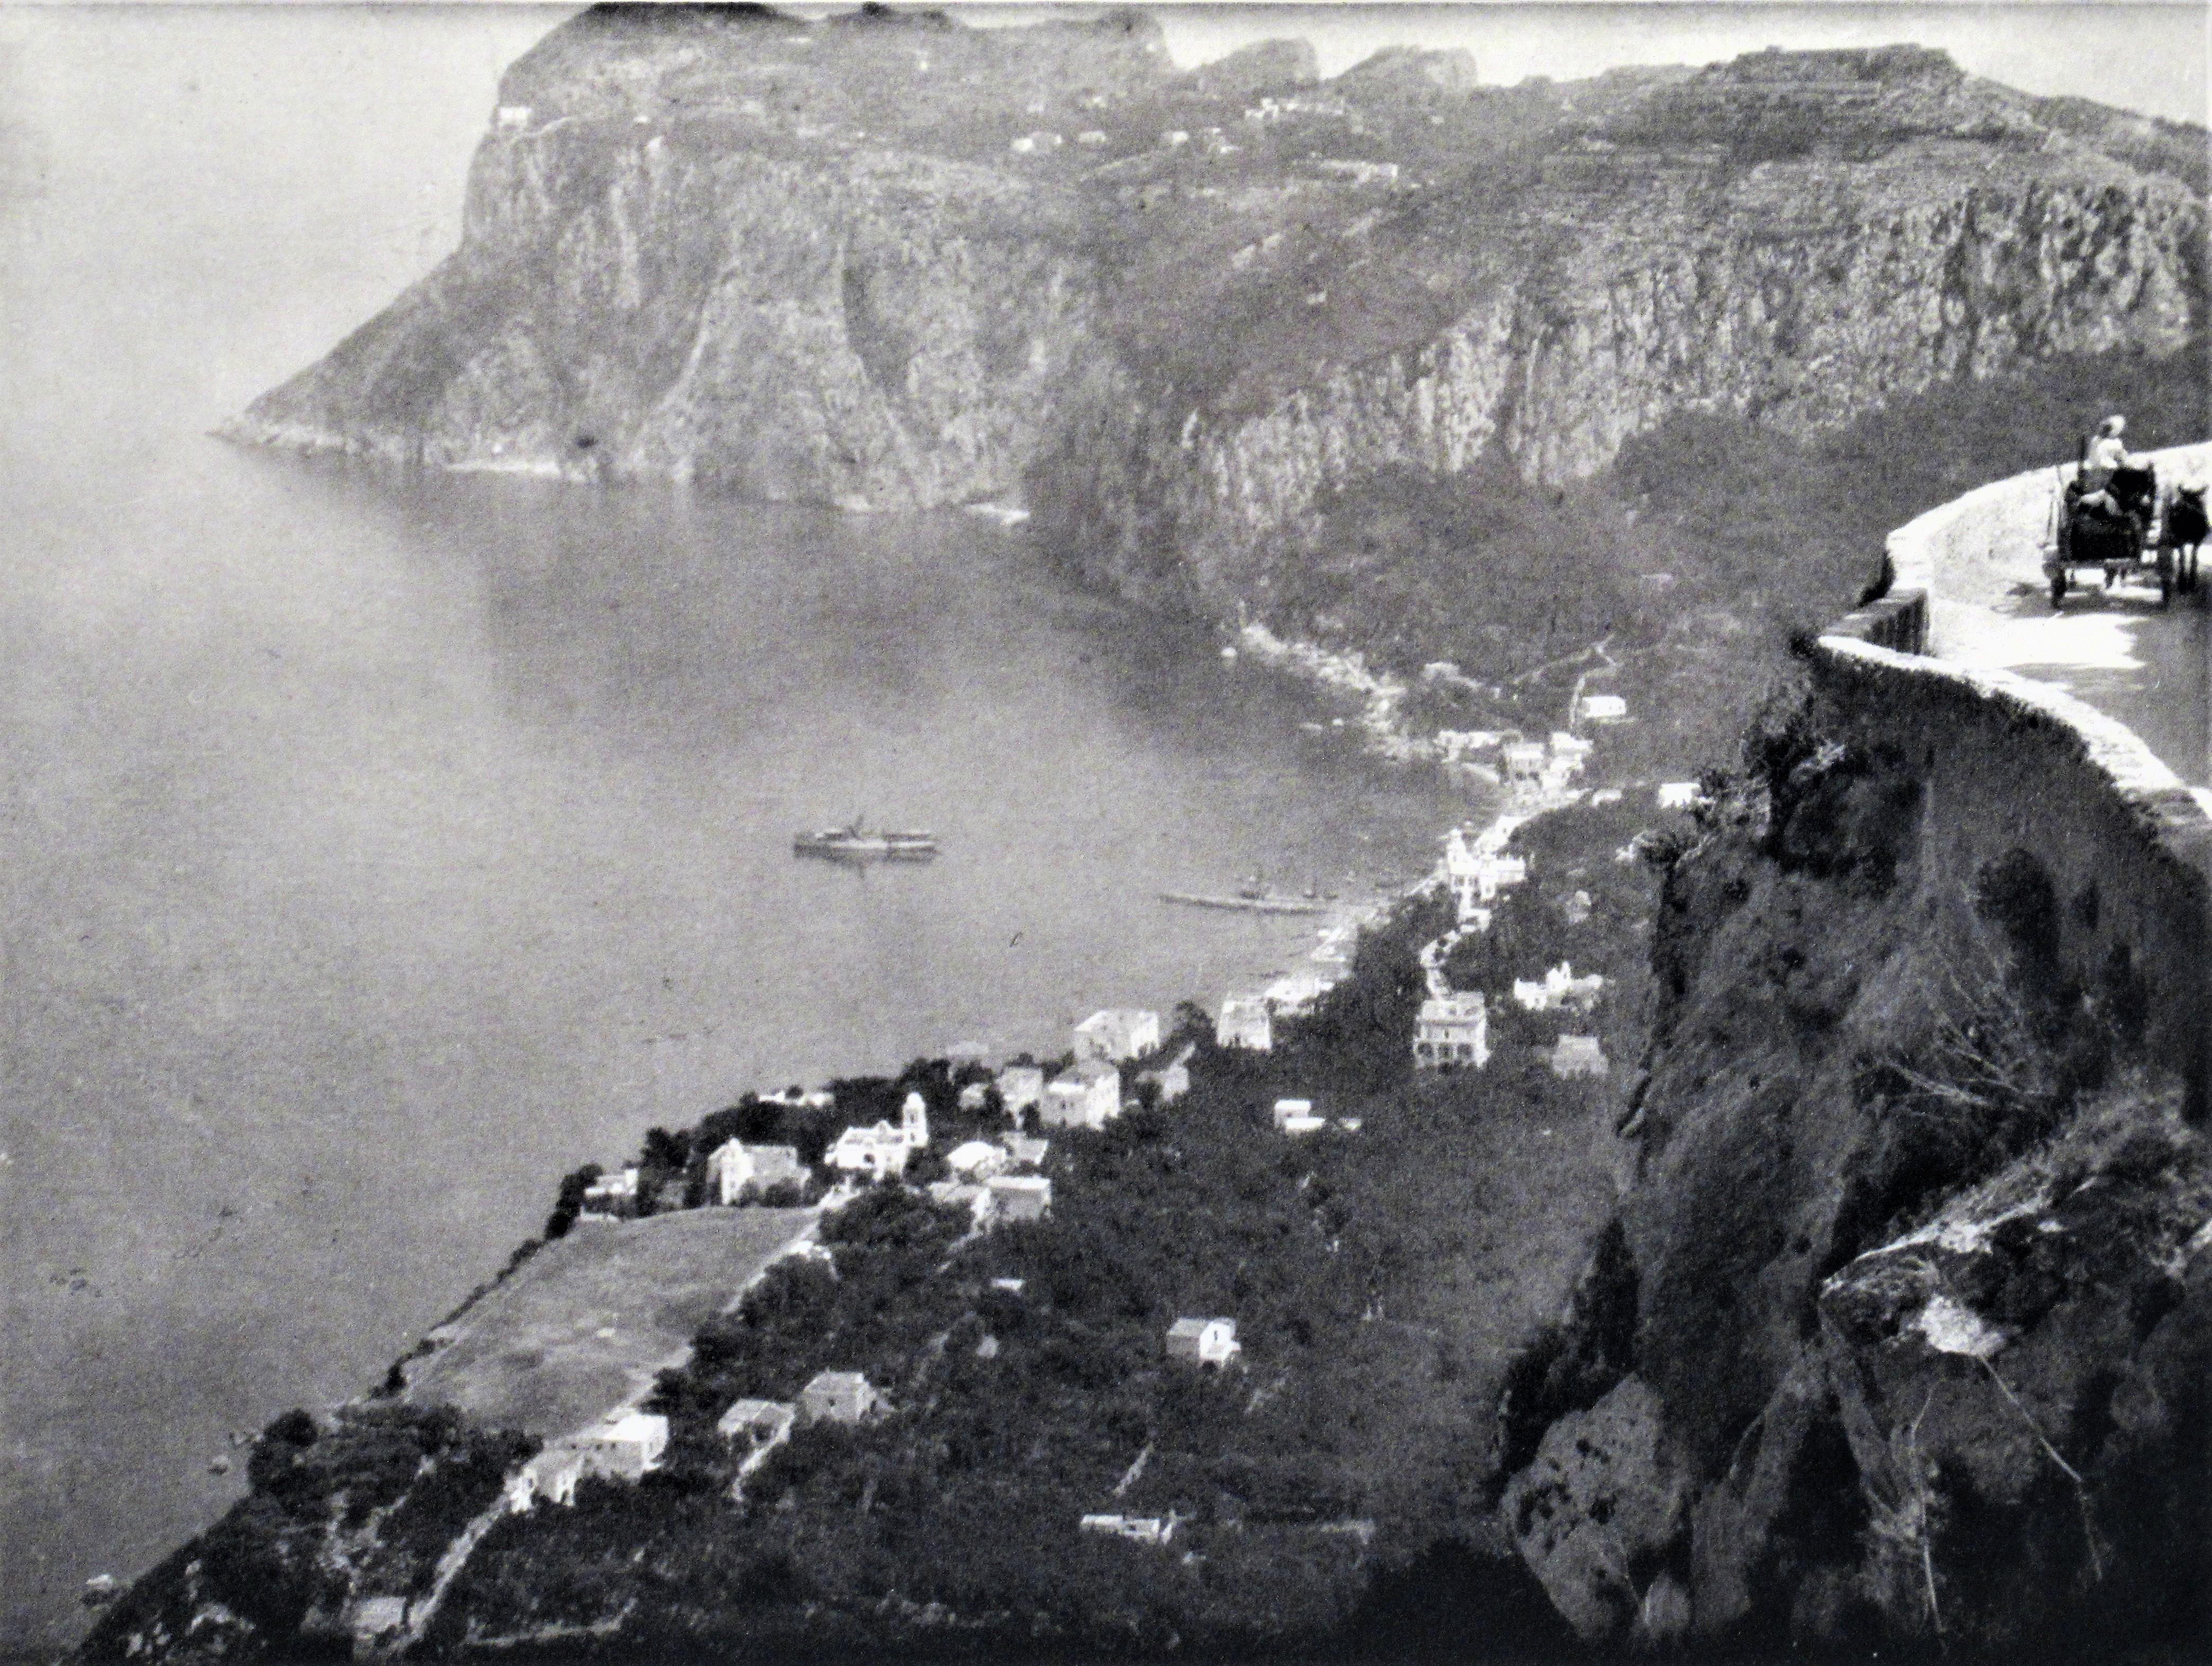 Les Cliffs, Sorrento - Photograph de Karl Struss